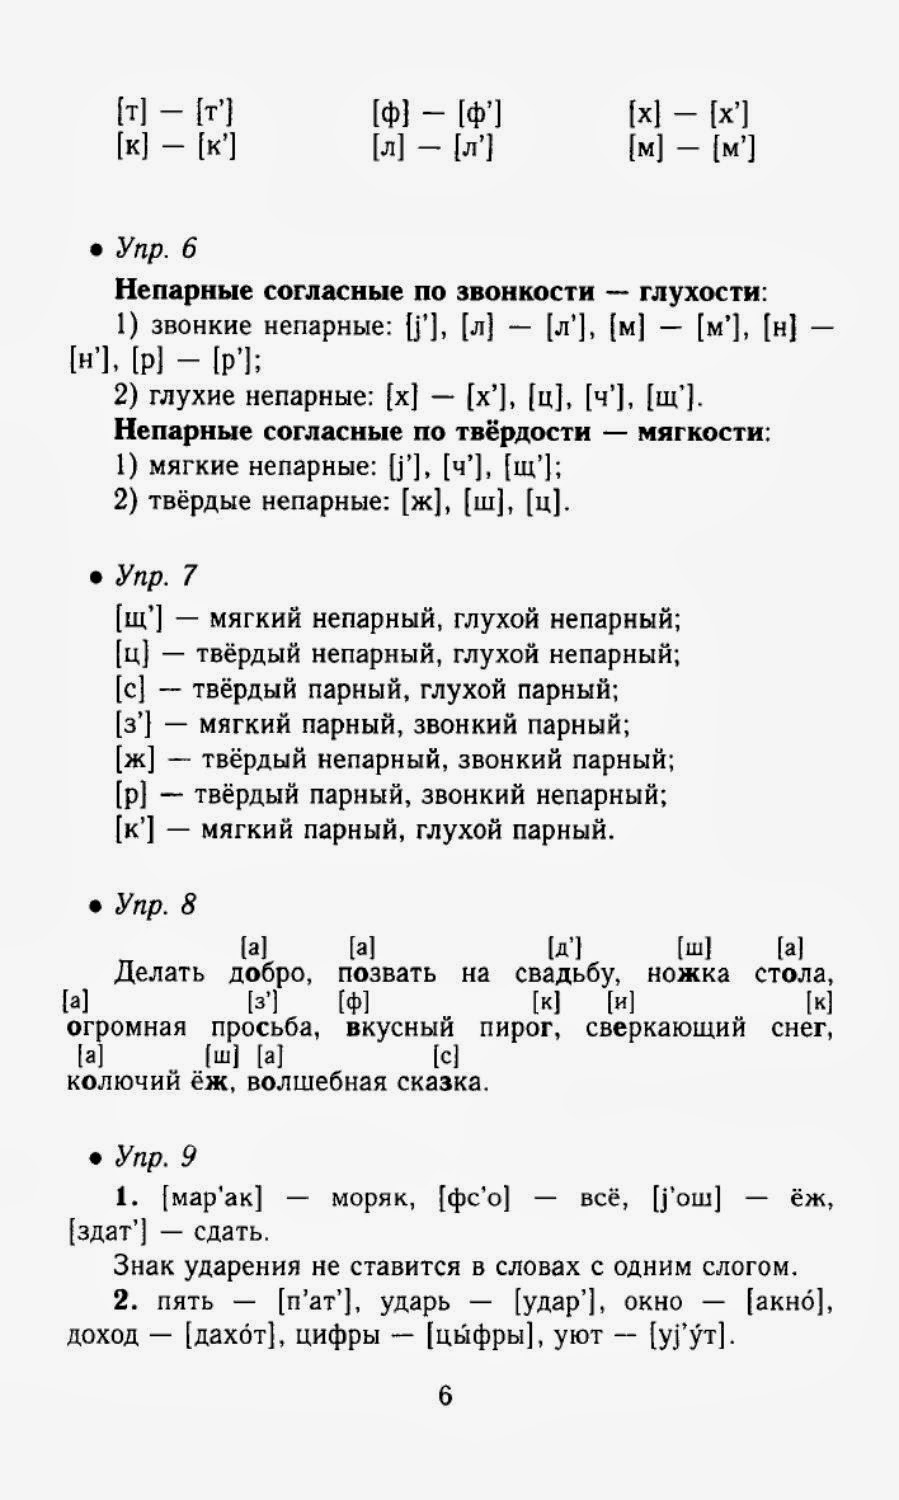 Все домашние задание по русскому языку 5 класса с.и.львова в.в.львов